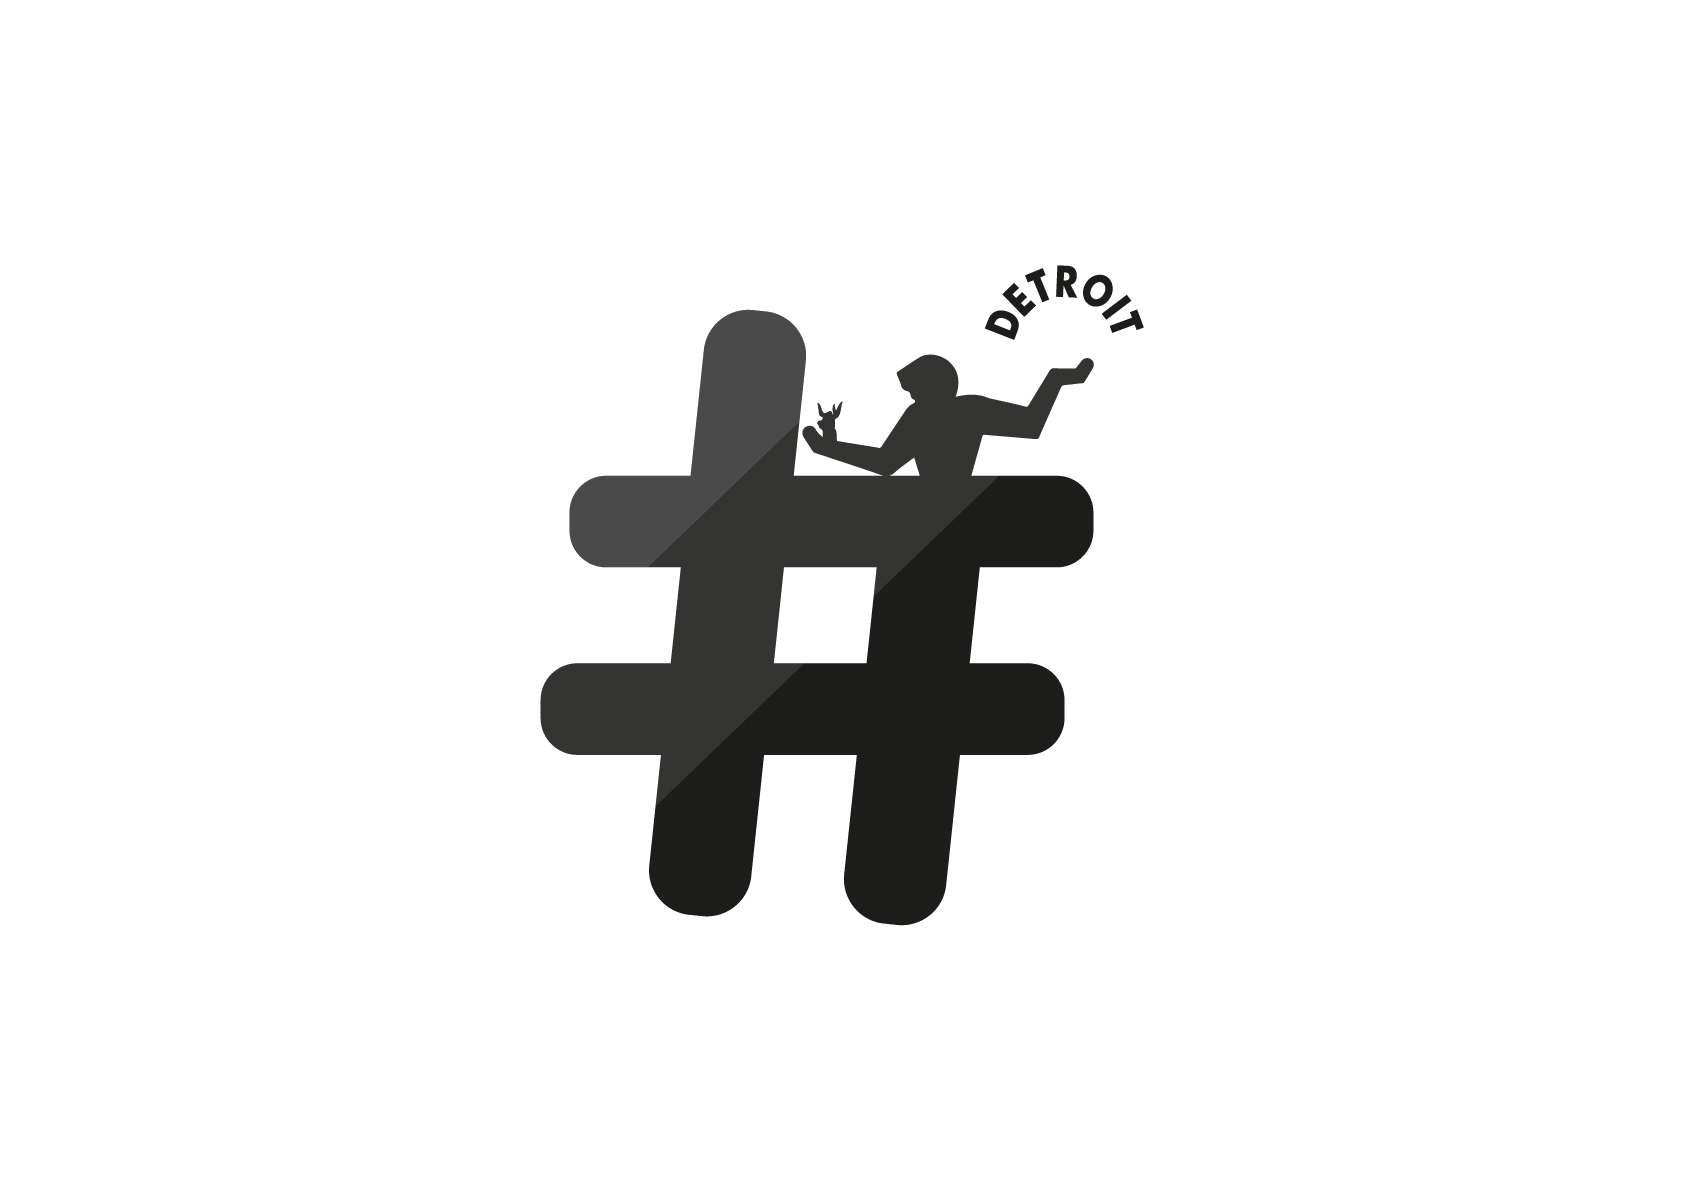 Hashtag Detroit Life - Logo inverted